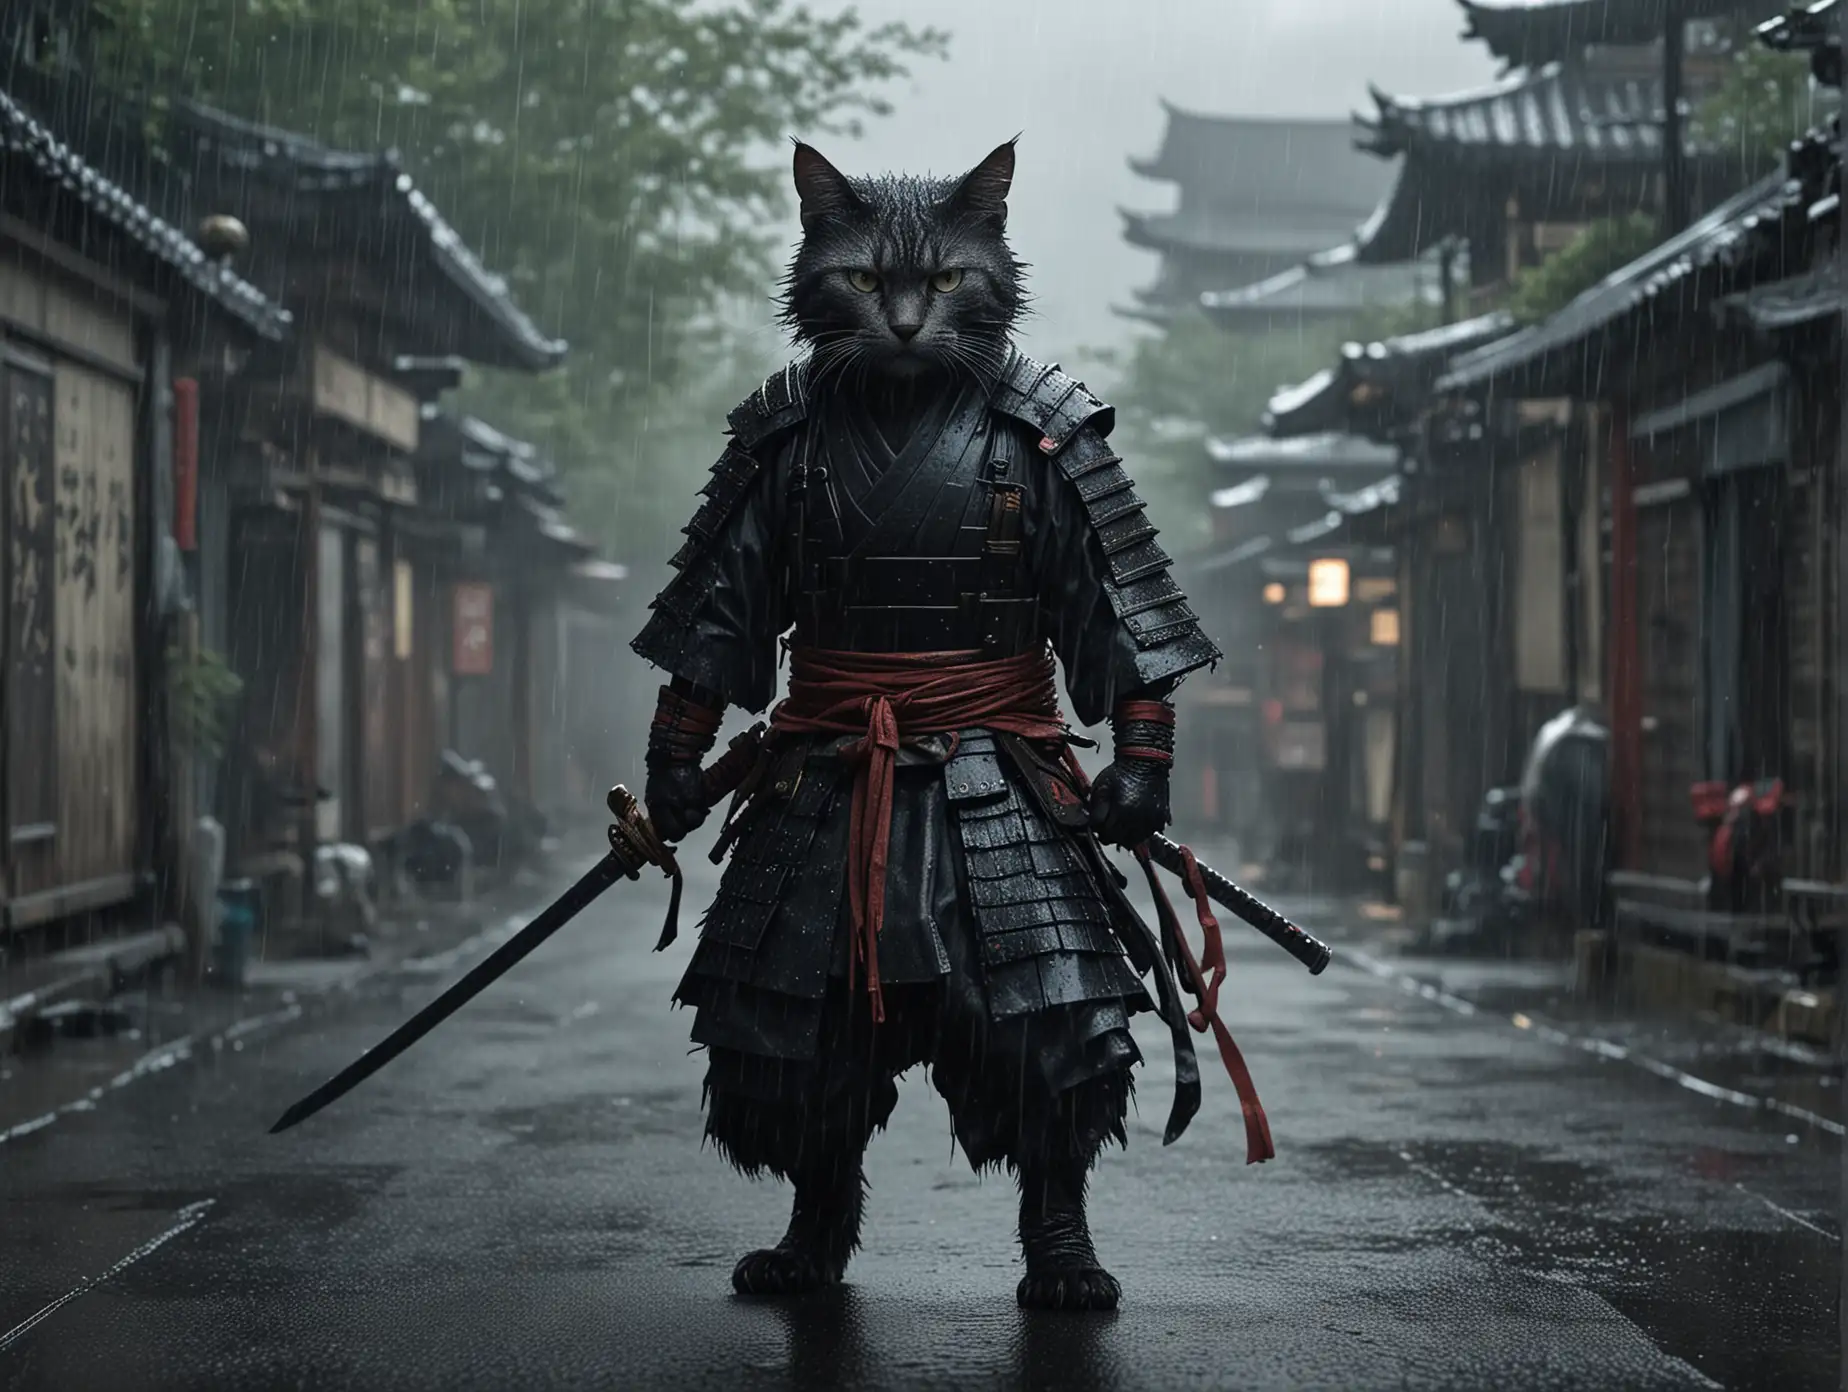 Humanoid cat, Samurai. in the rain, dark and gritty